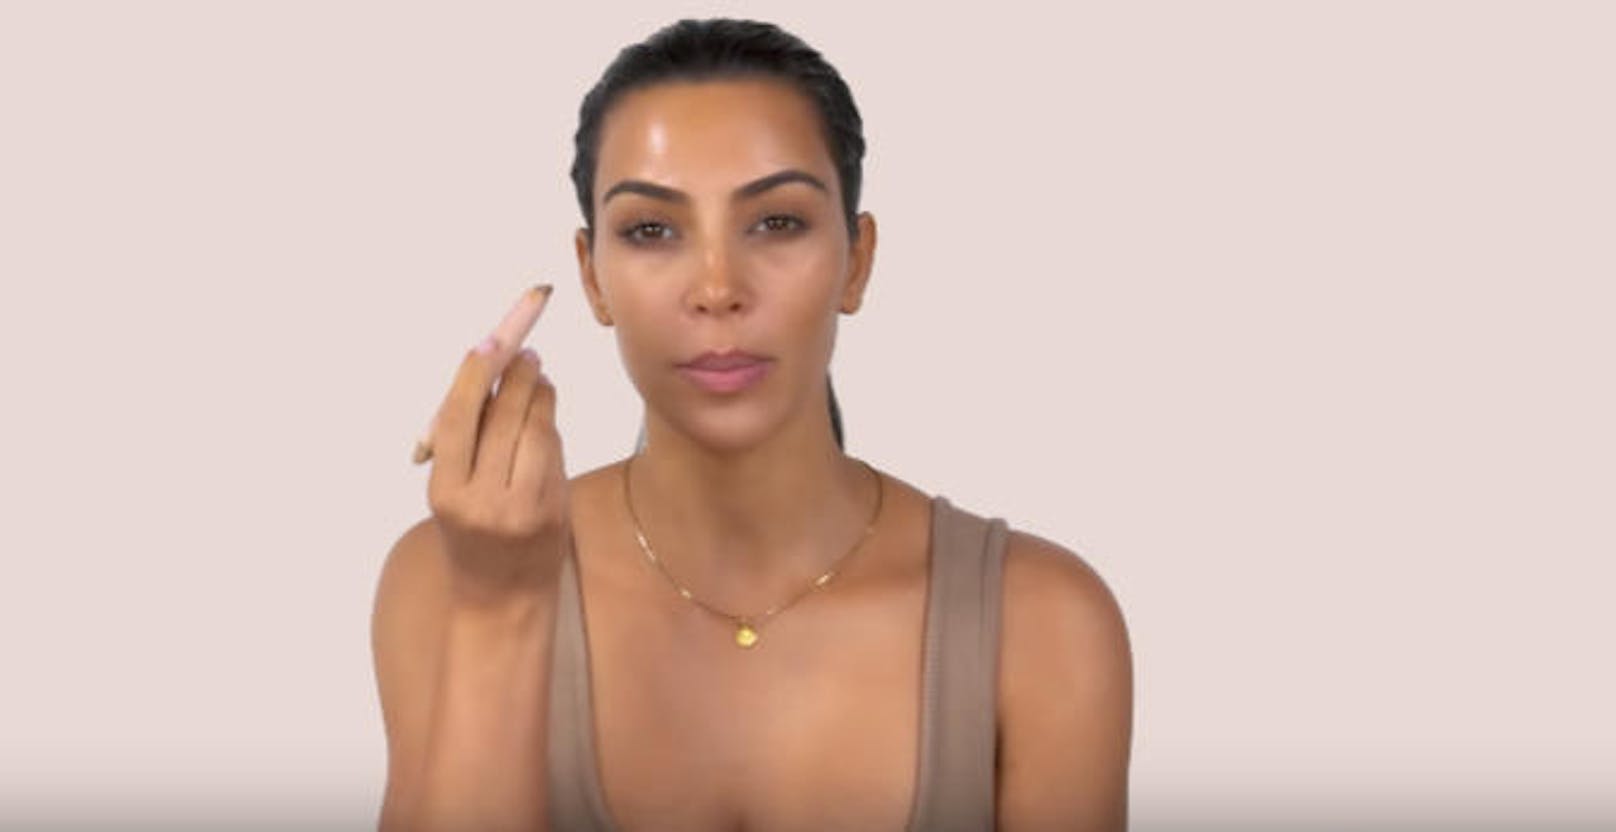 Bronzer als Lidschatten - das ist der Beauty-Tipp von Kim Kardashian, um die Augen subtil zu betonen. 